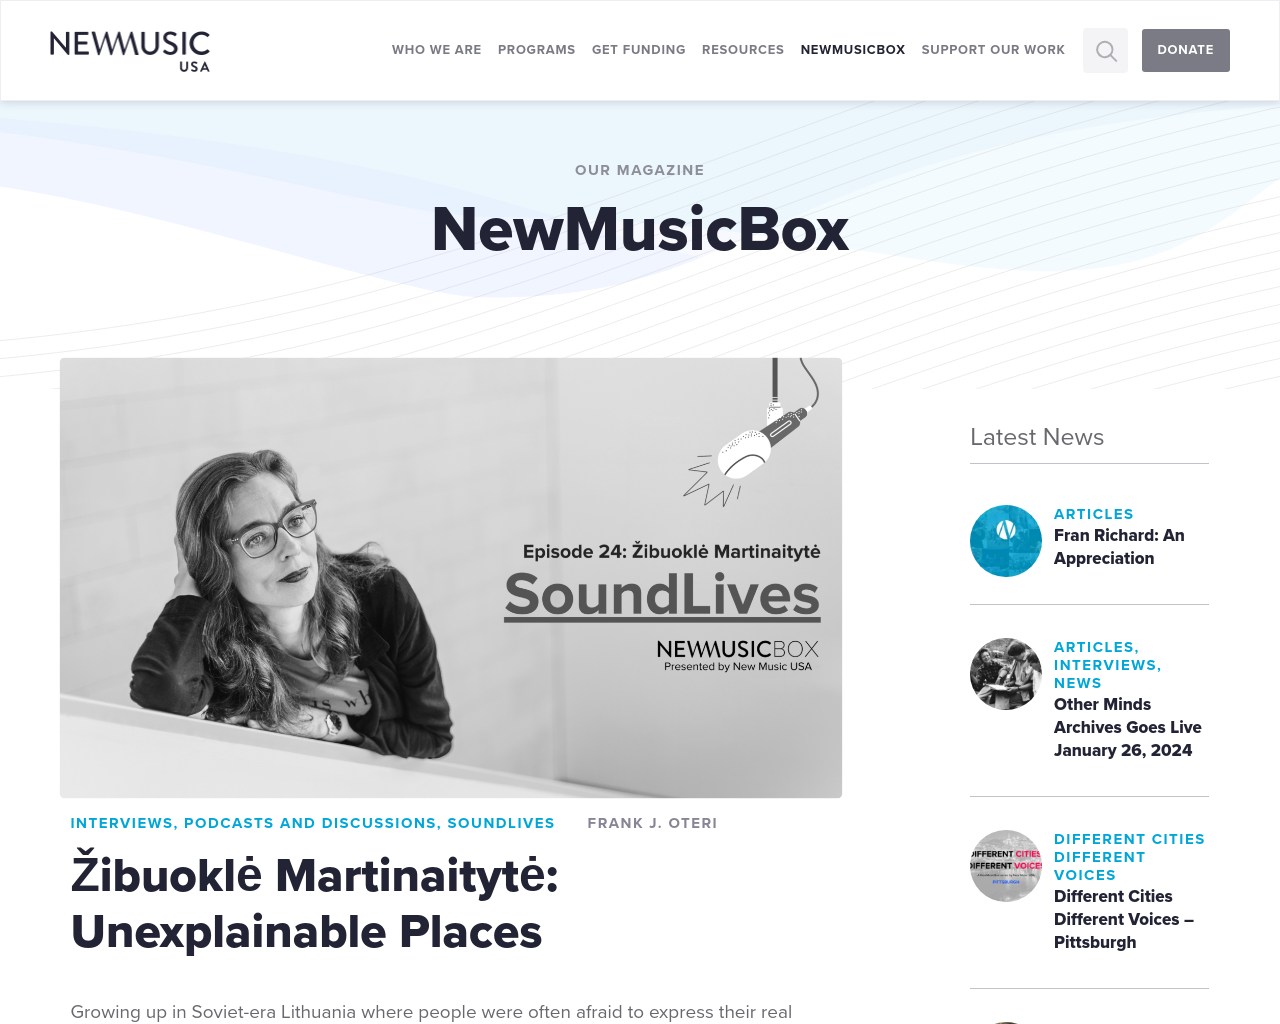 newmusicbox.org